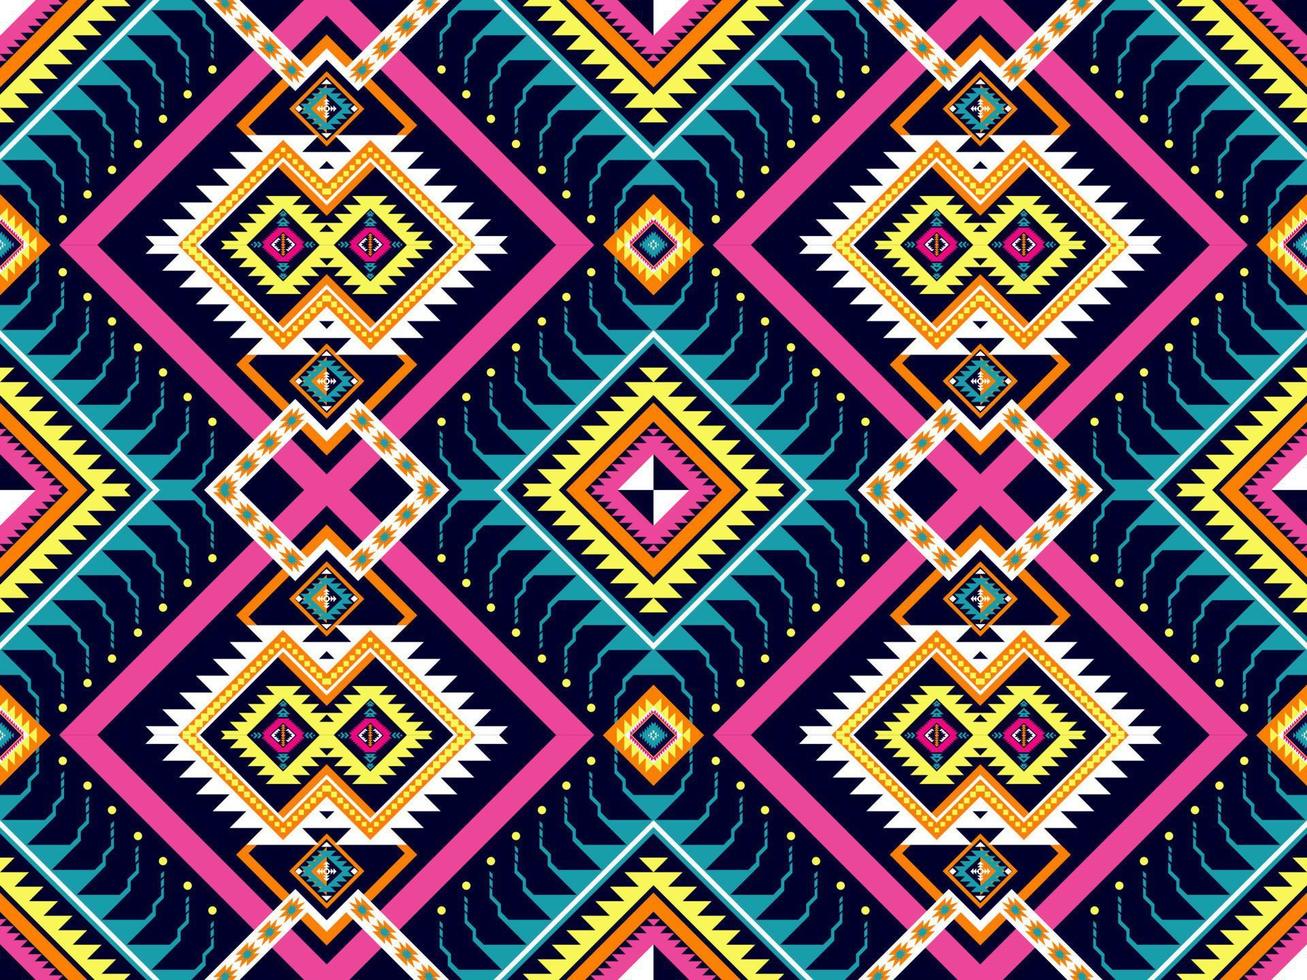 design de fundo padrão geométrico étnico tradicional para fundos tapete papel de parede roupas embrulhar tecido sem costura estilo bordado ilustração vetorial vetor